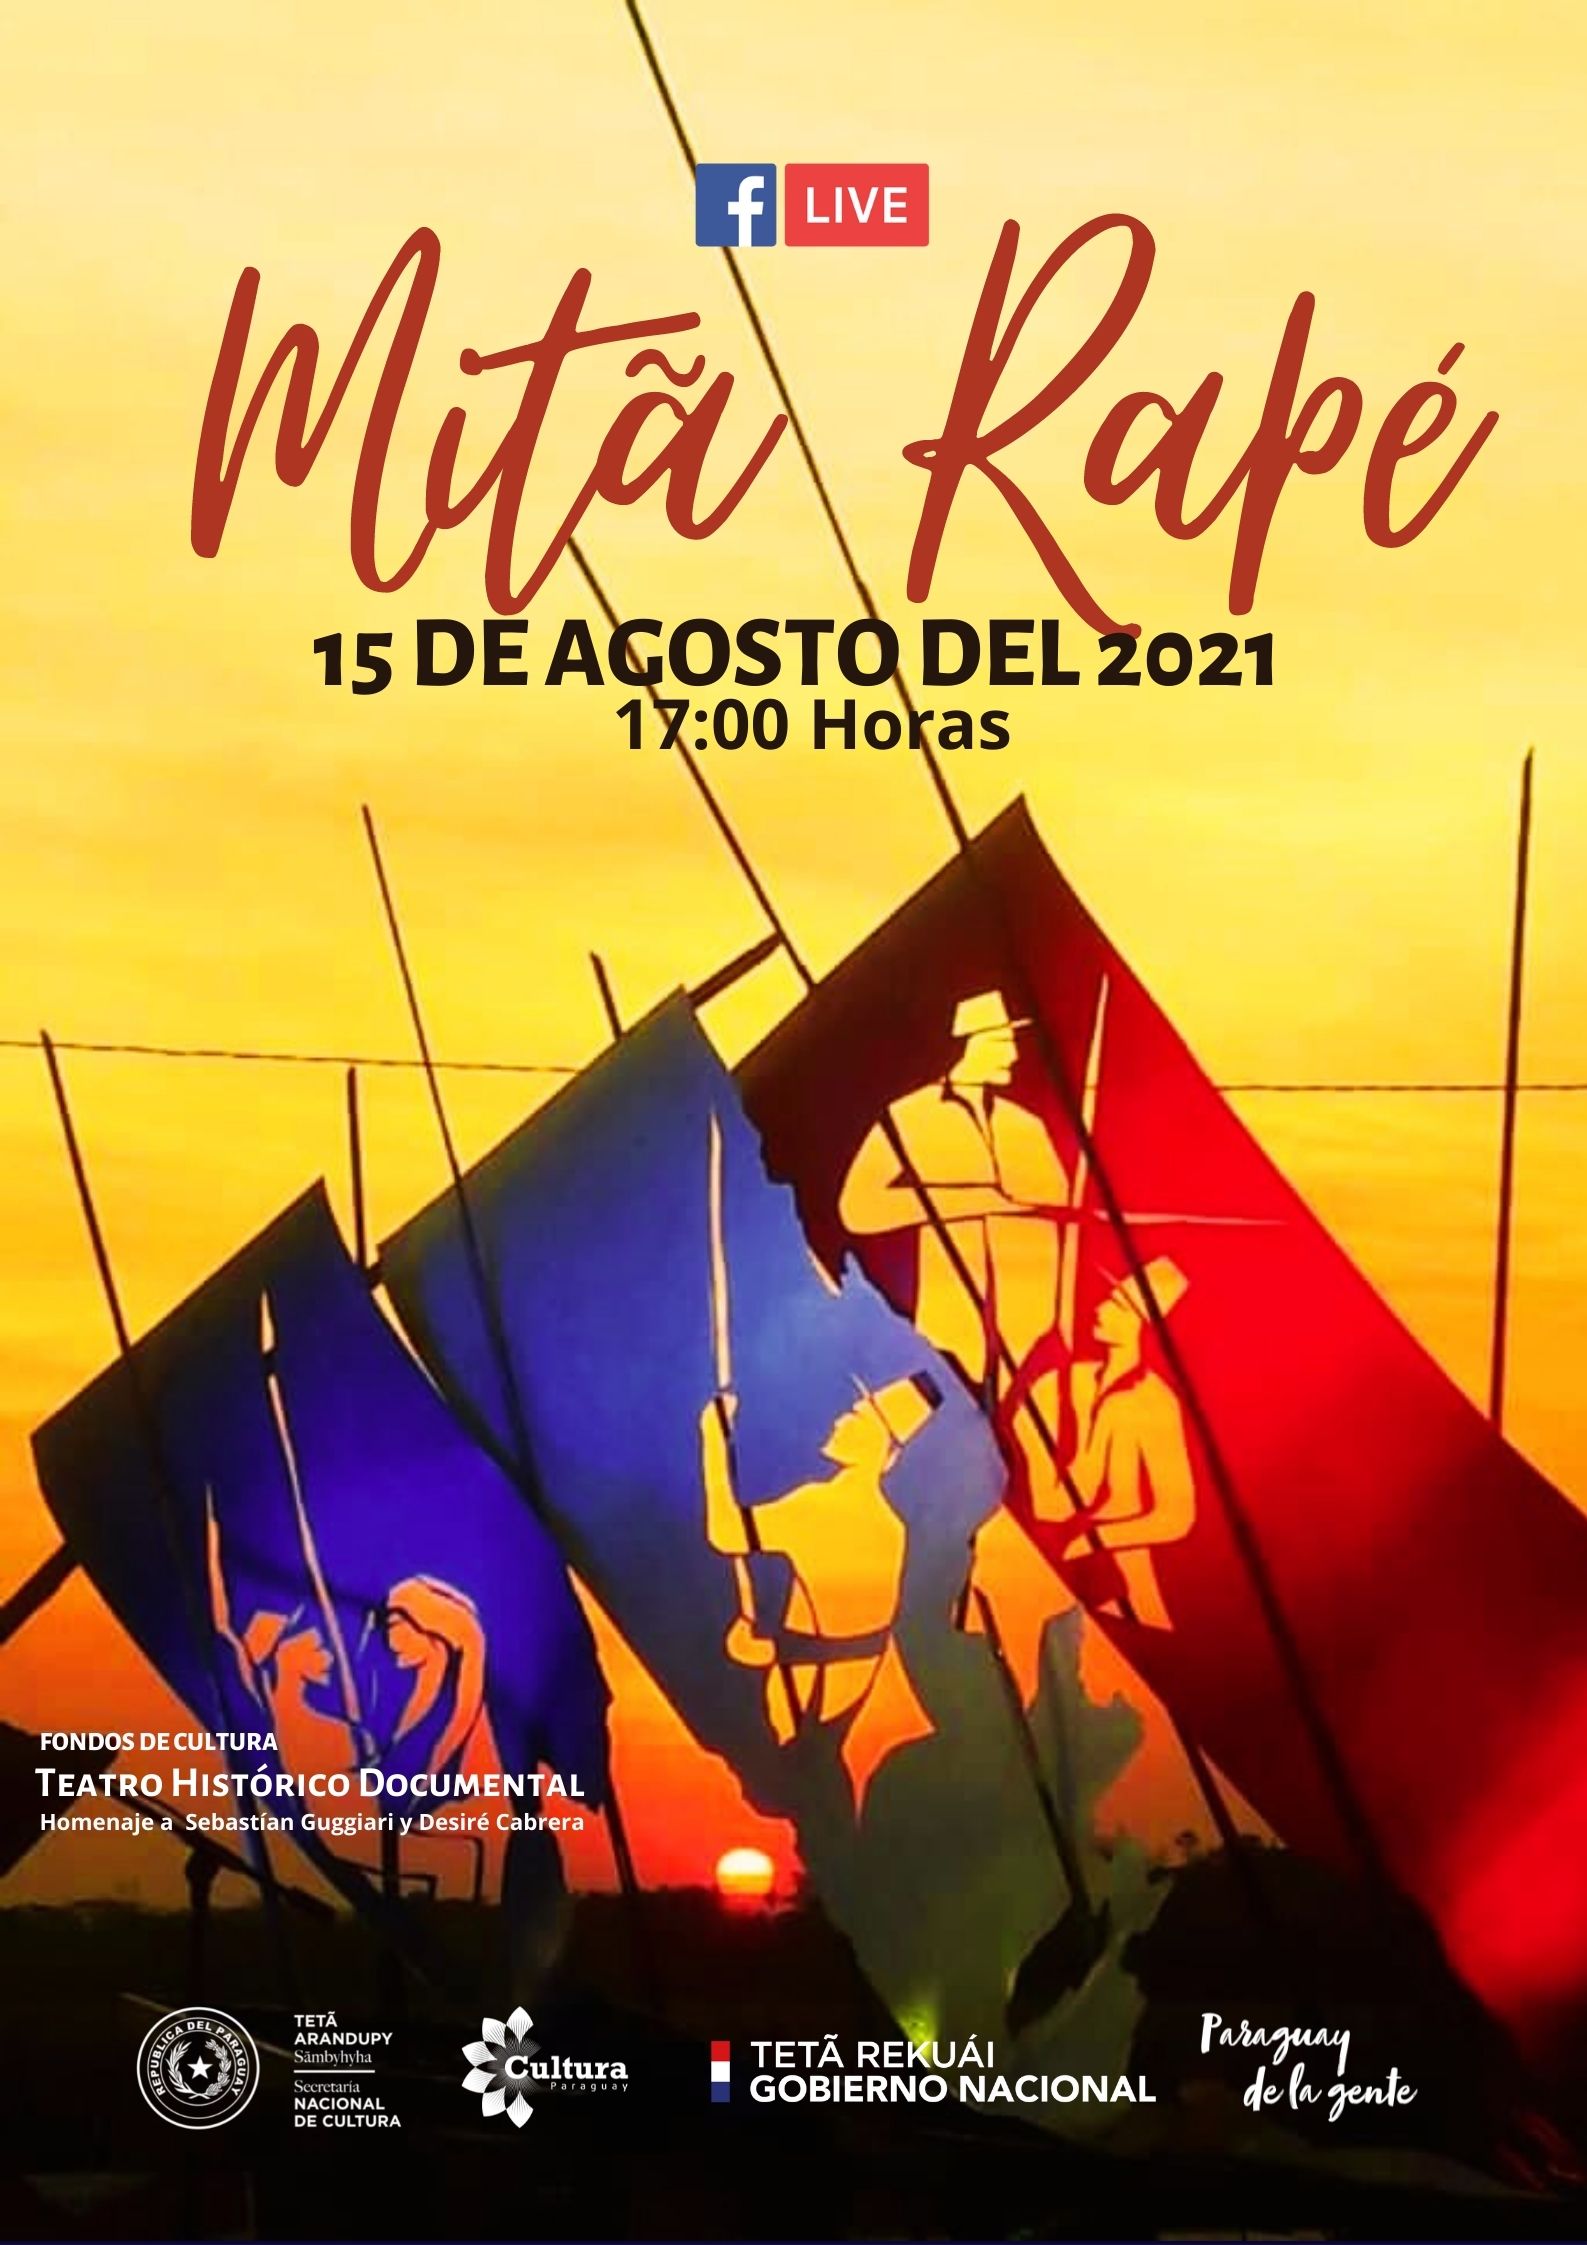 Teatro histórico documental rememorará la Batalla de Acosta Ñú imagen